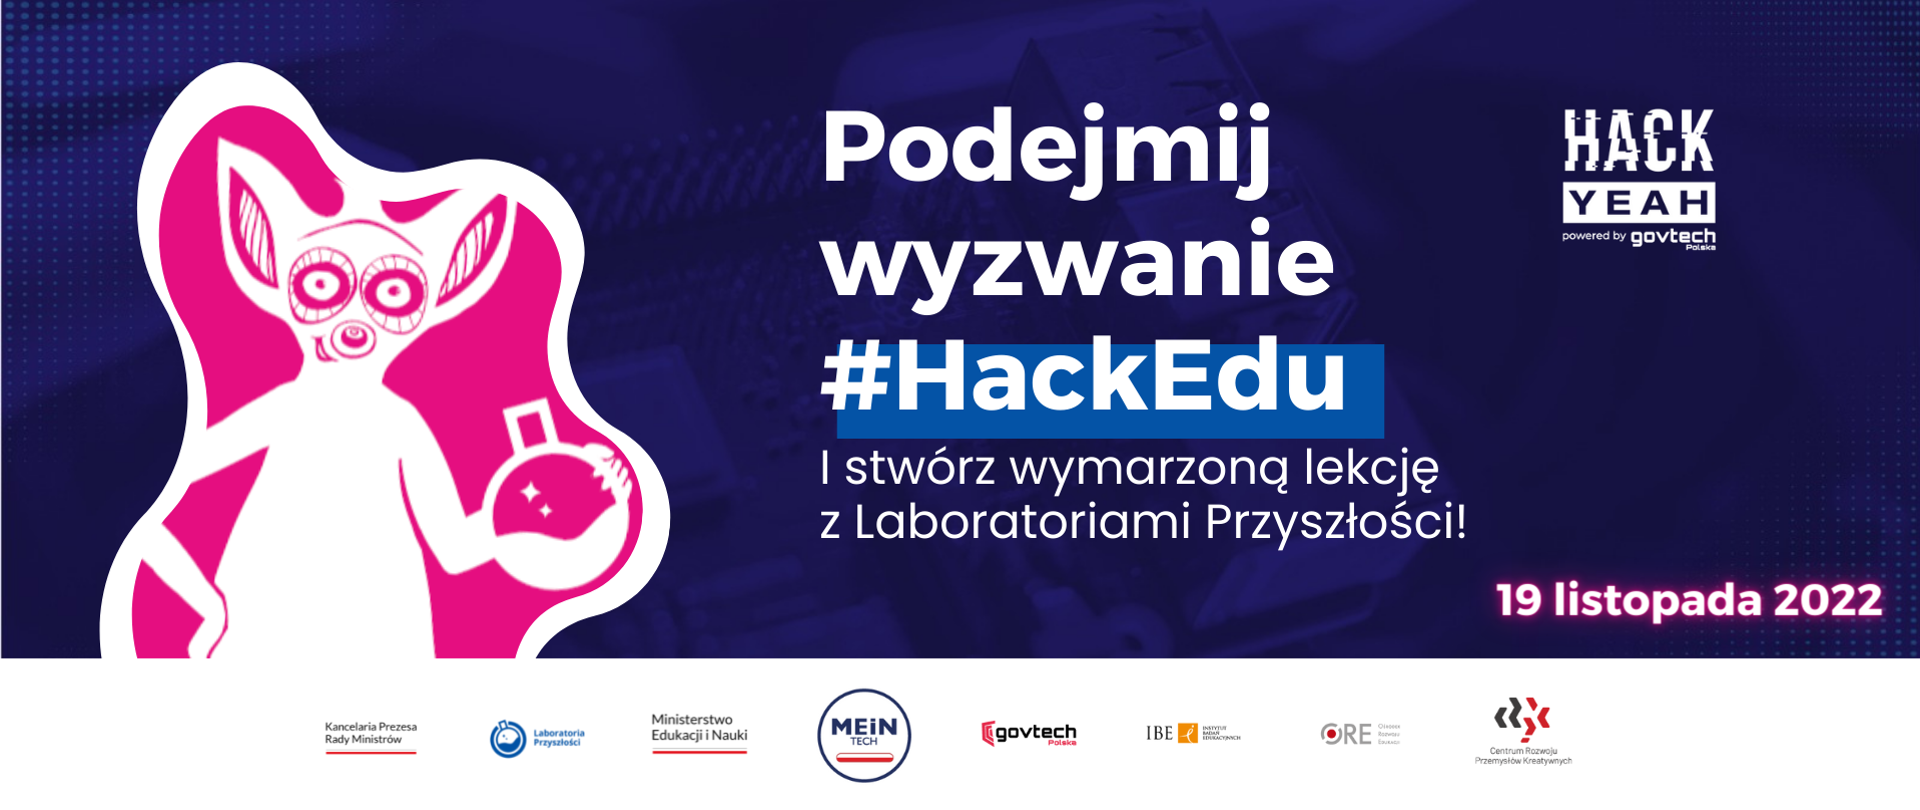 Po obrazek lemura.
Po prawej napis: Podejmij wyzwanie #HackEdu
I stwórz wymarzoną lekcję z Laboratoriami Przyszłości
19 listopada 2022